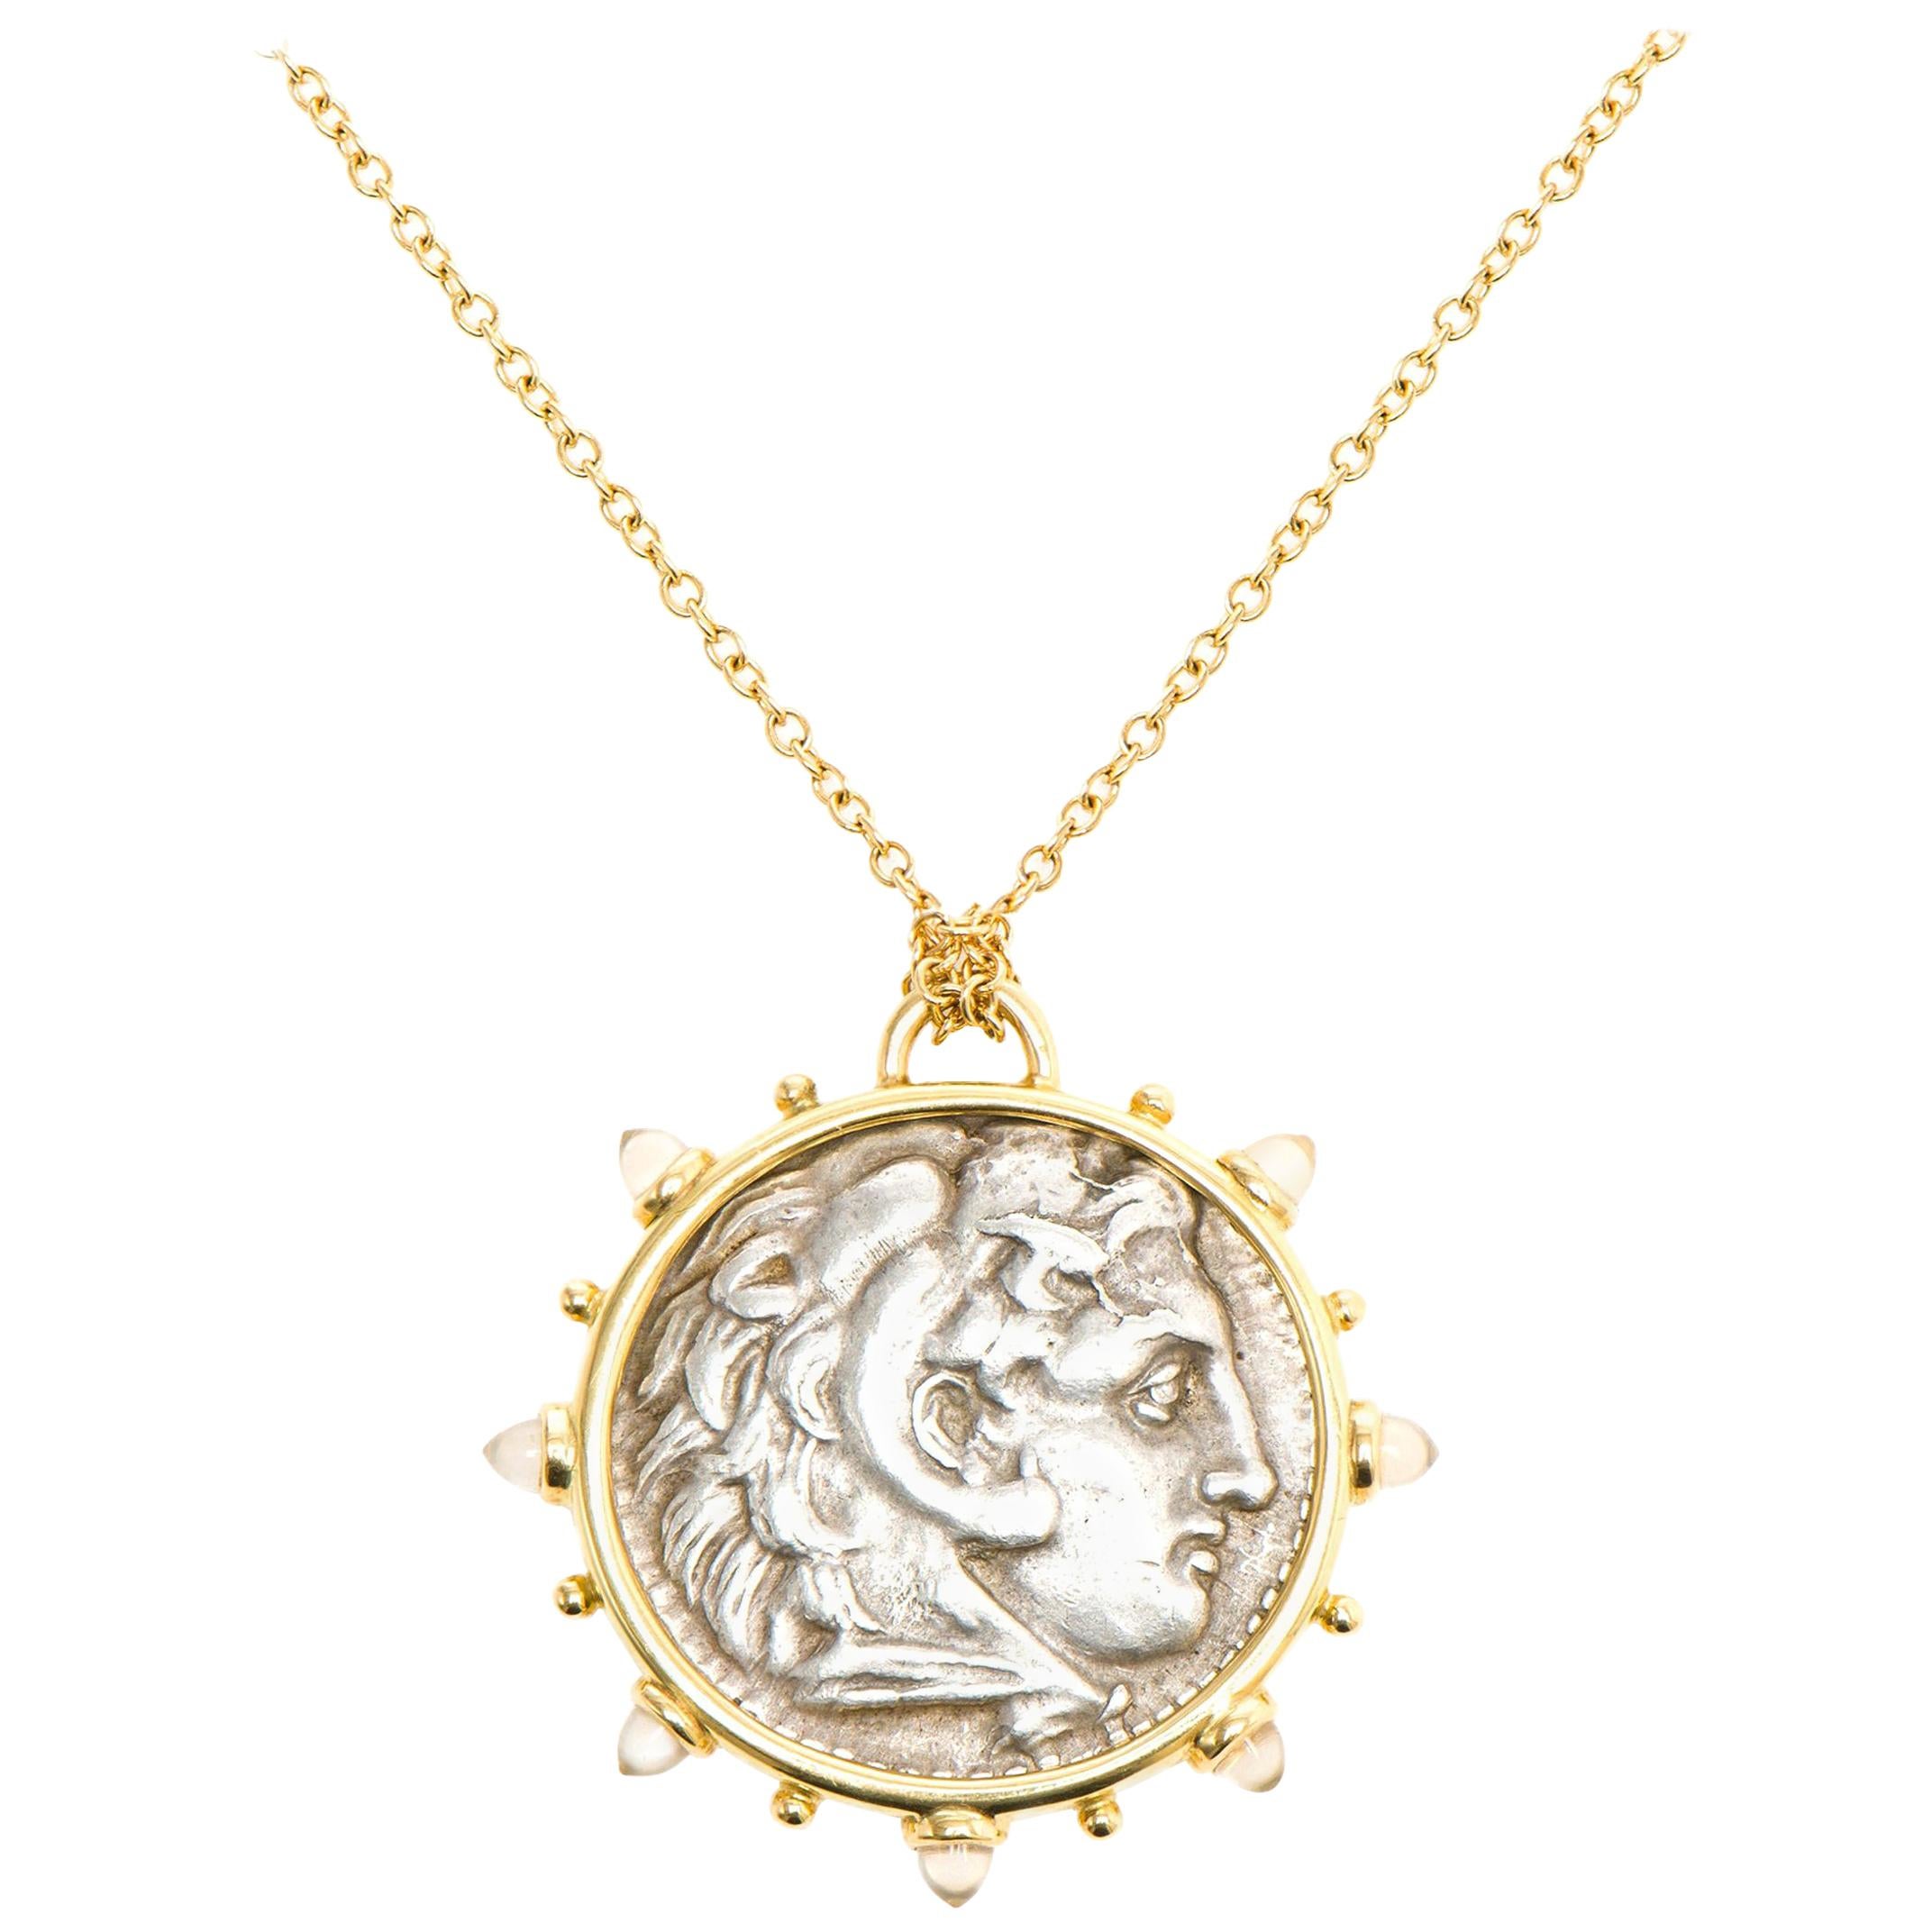 Dubini Alexander der Große antike Silbermünze Medaillon Mondstein Gold Halskette